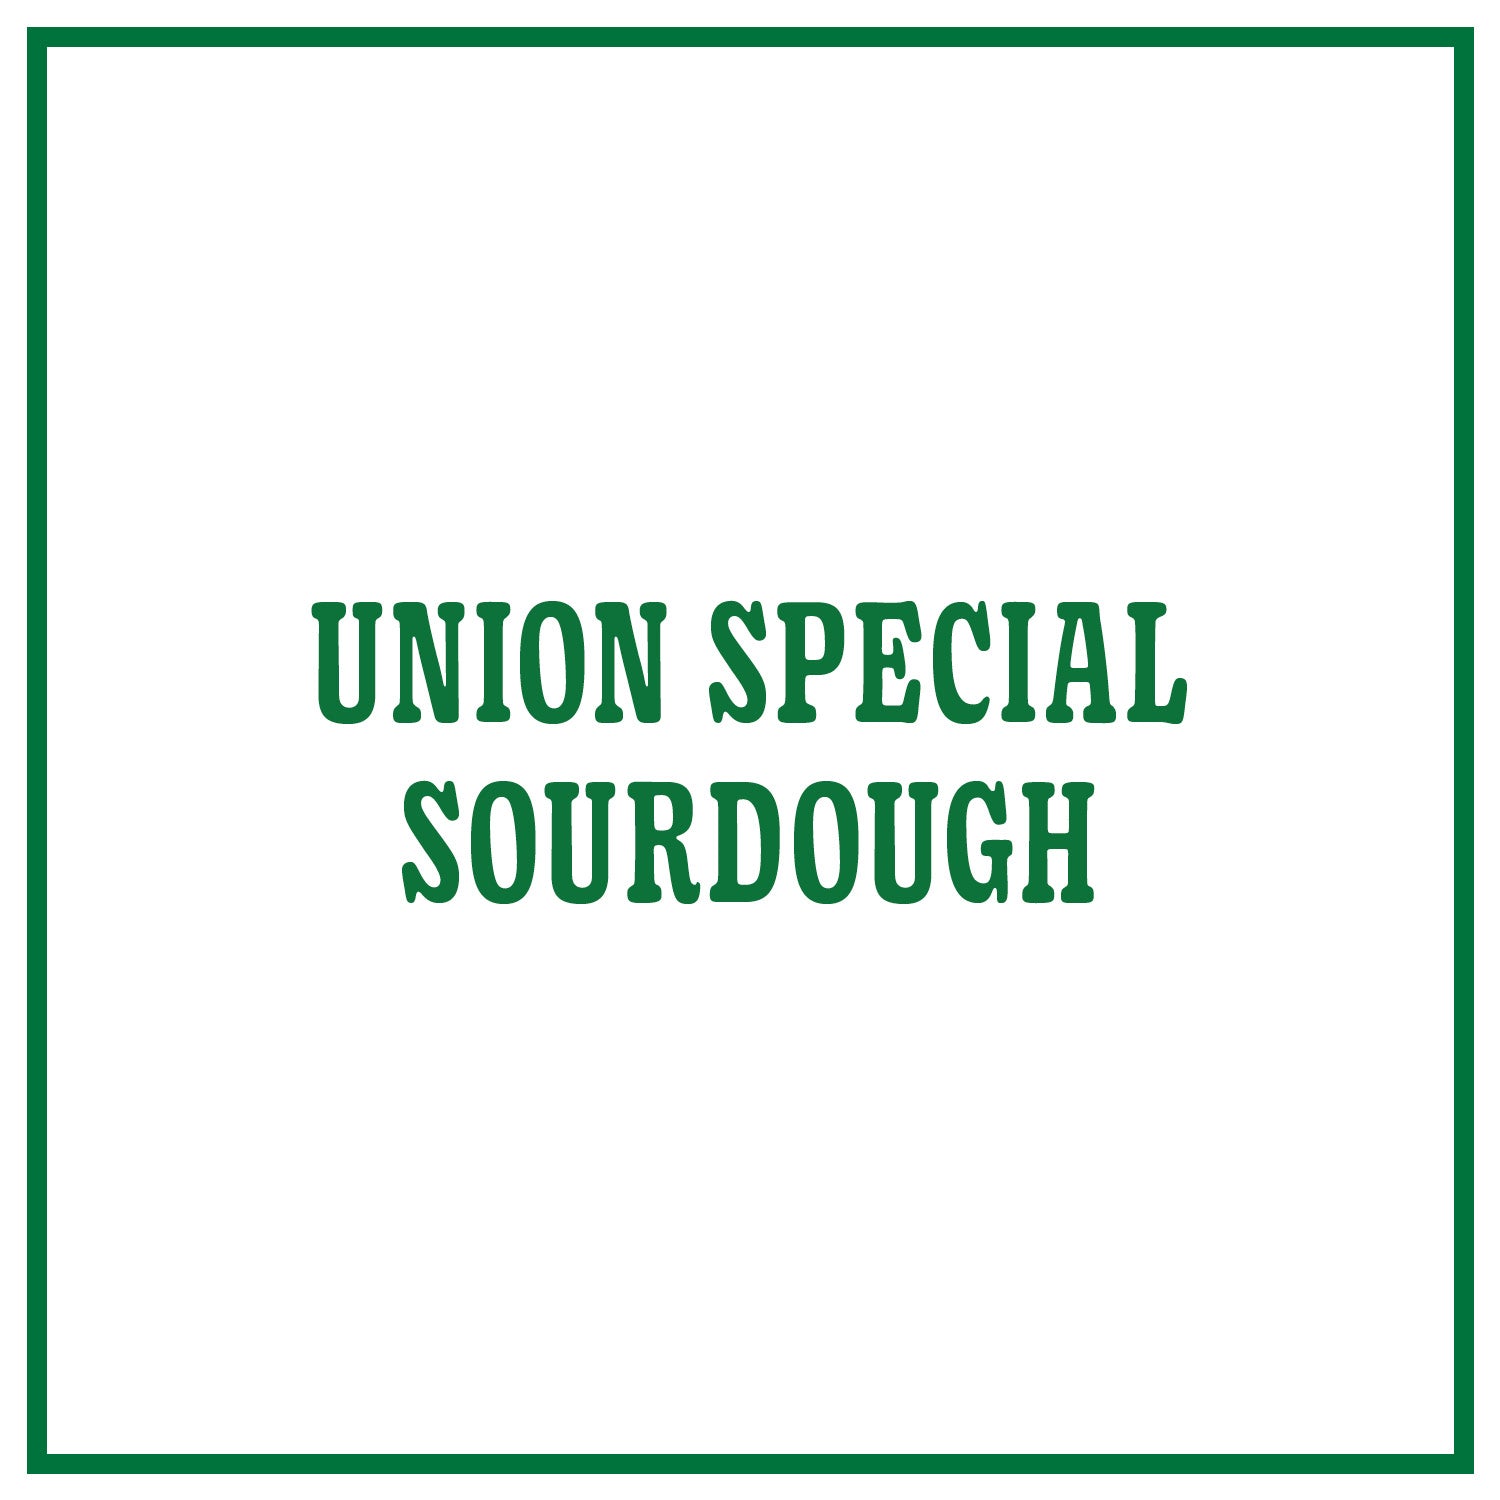 Union Special Sourdough